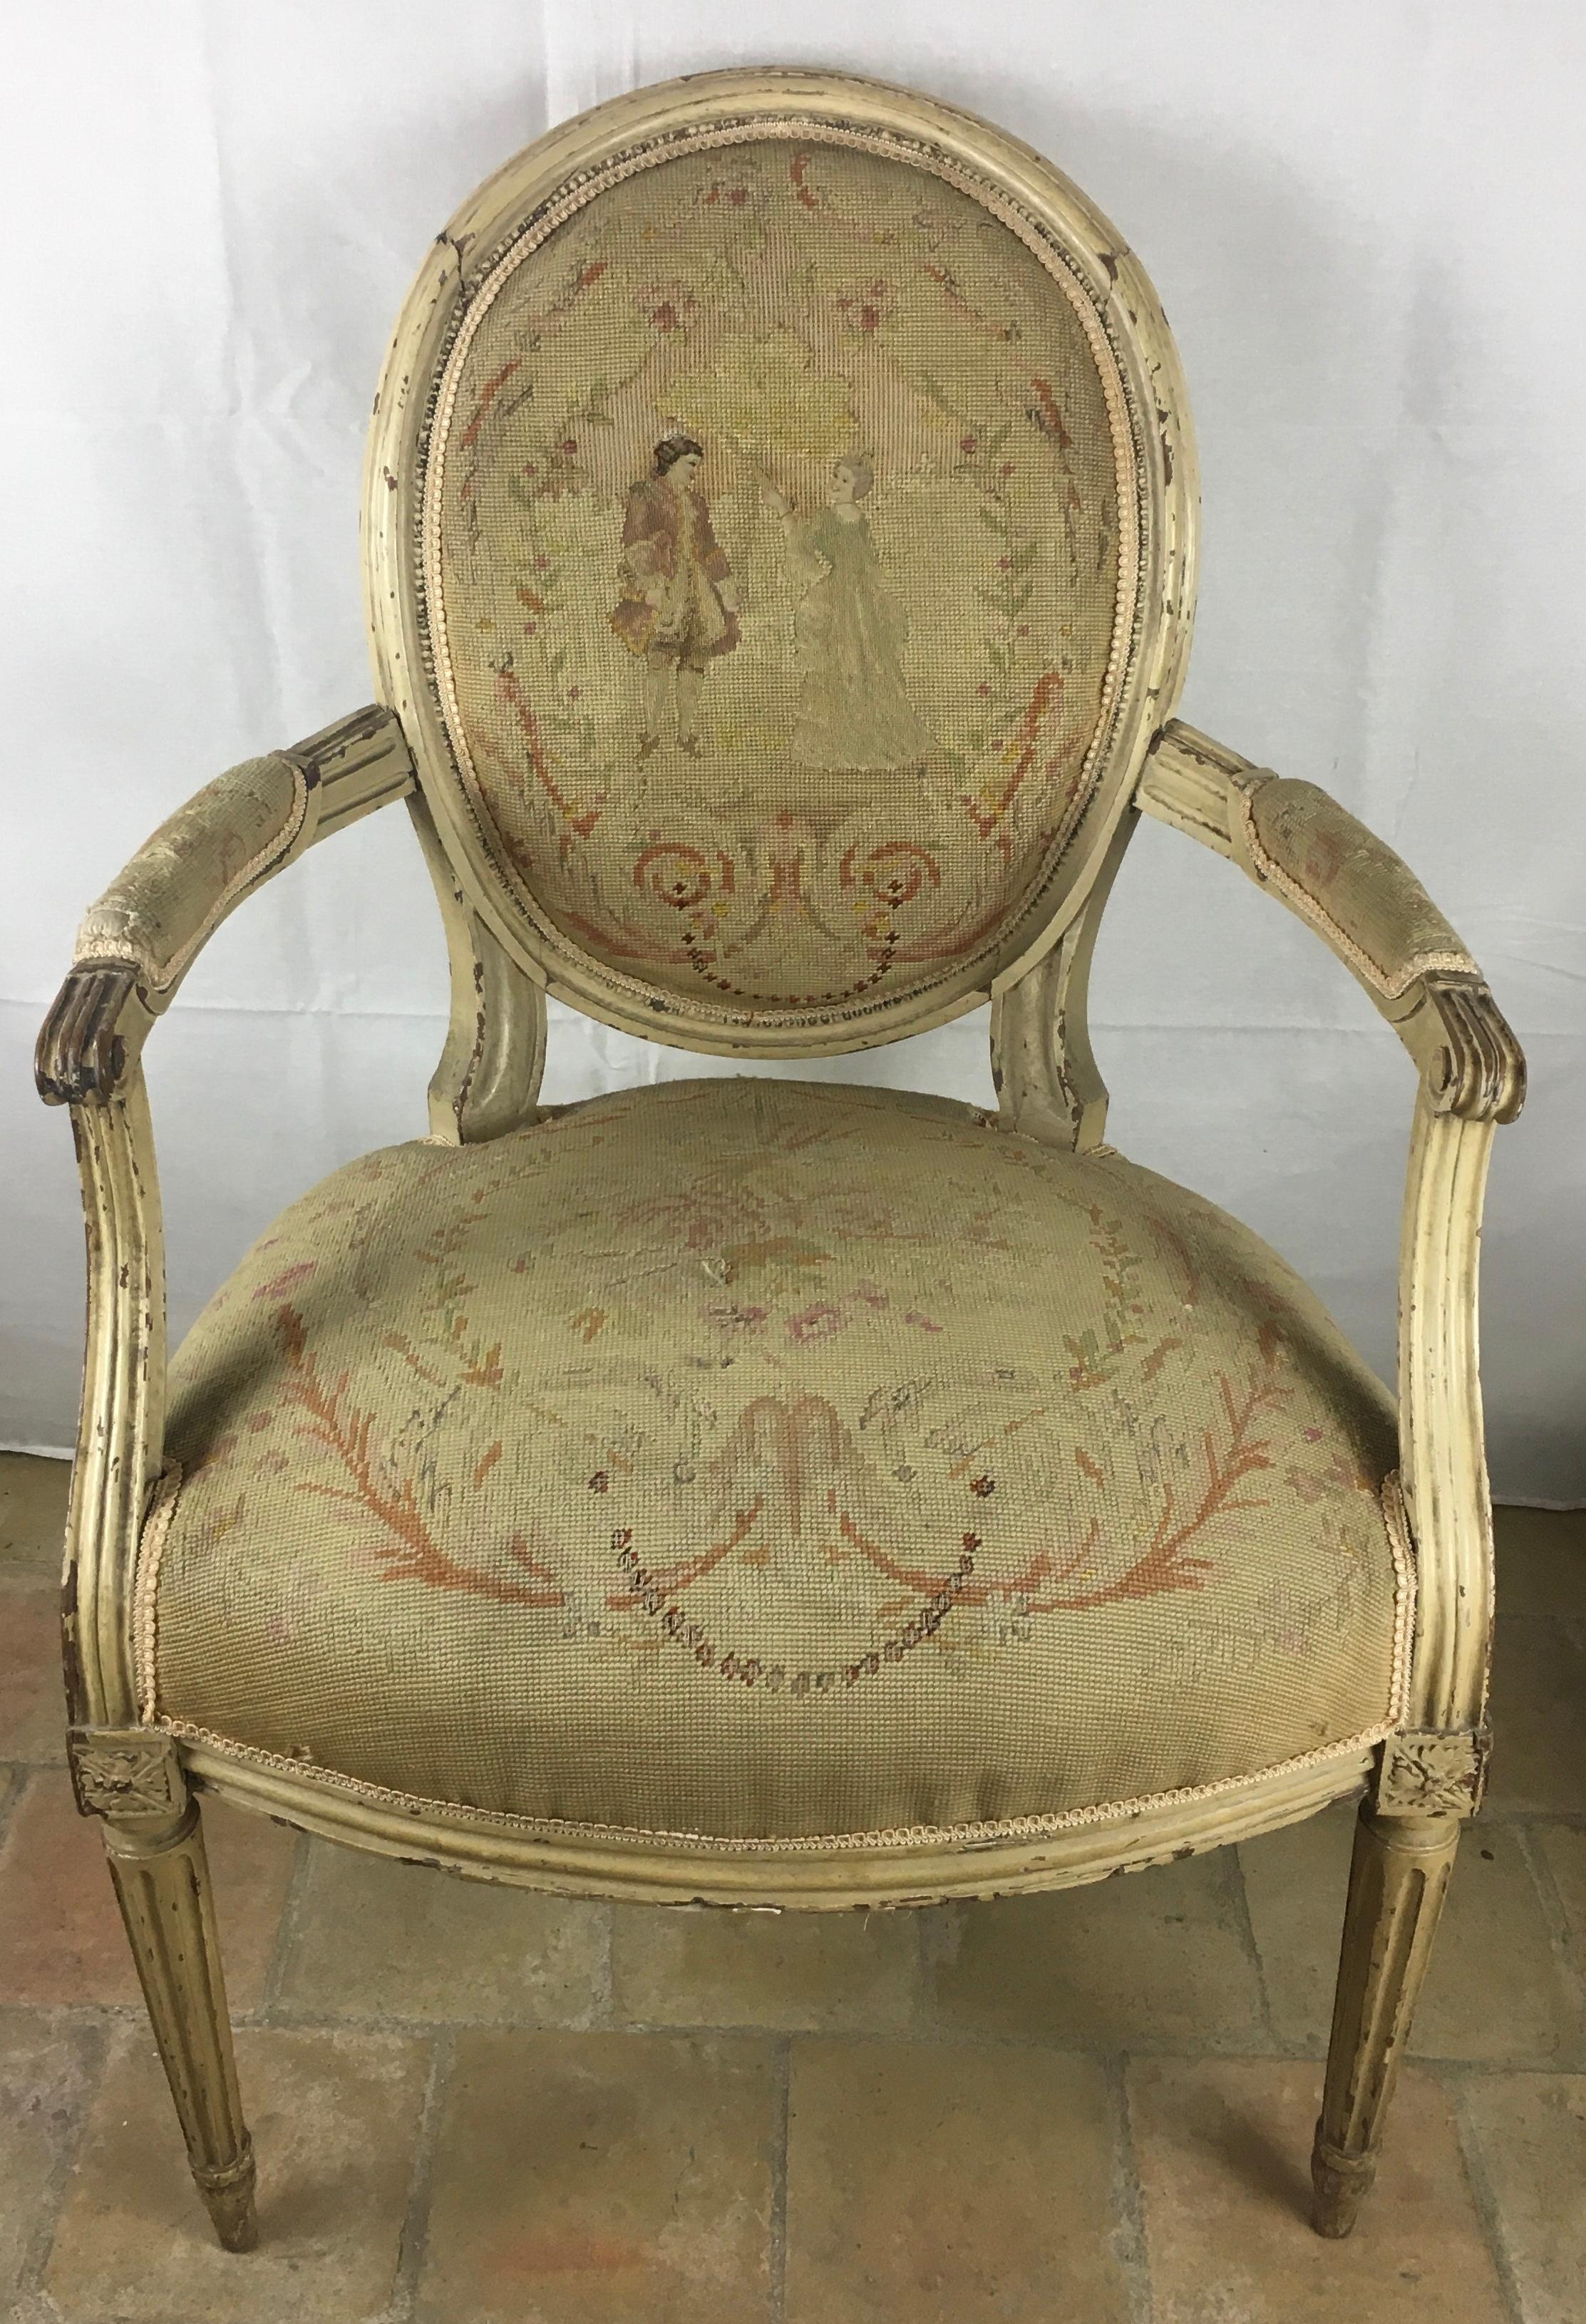 Très belle paire de fauteuils Louis XVI français du XVIIIe siècle, accoudoirs à volutes, assise en arc de cercle, reposant sur des pieds en bois.  pieds cannelés. Il a conservé la majeure partie de sa peinture d'origine et sa sellerie est ornée de